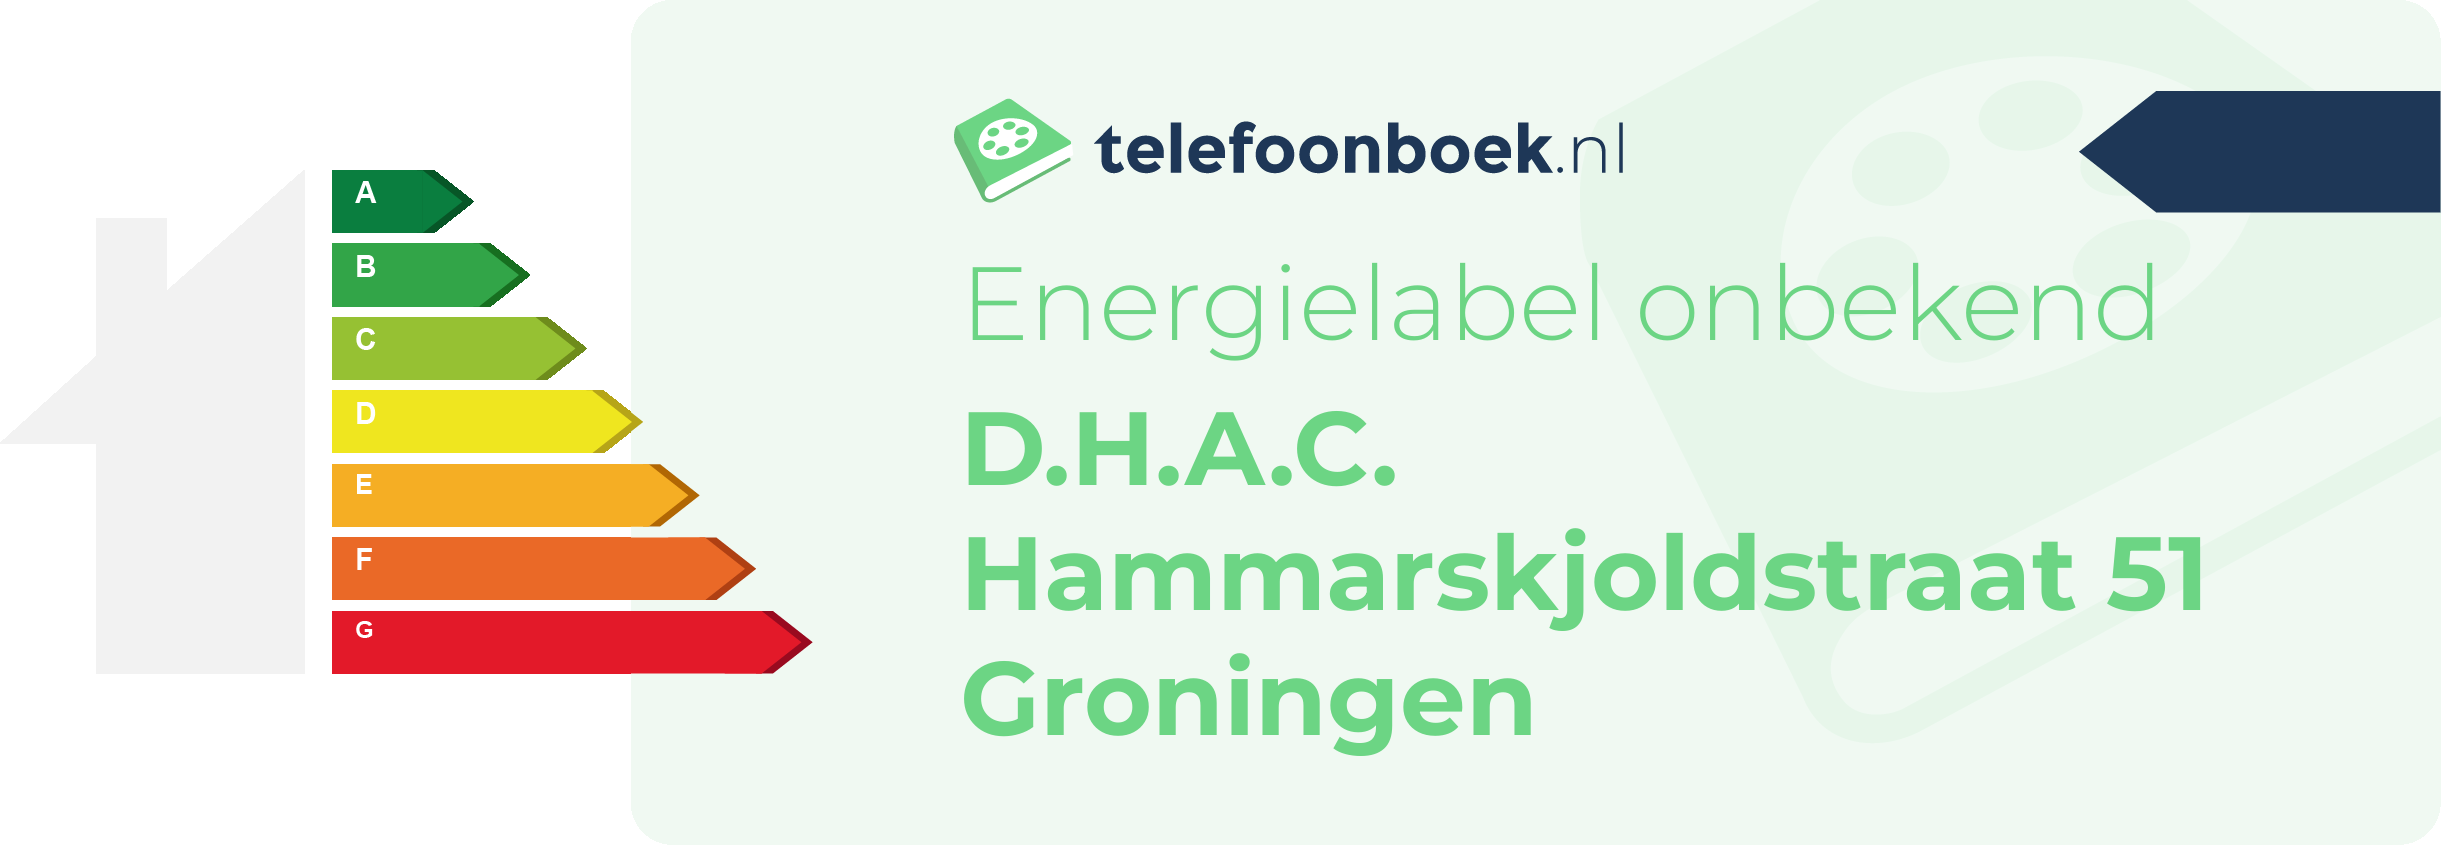 Energielabel D.H.A.C. Hammarskjoldstraat 51 Groningen